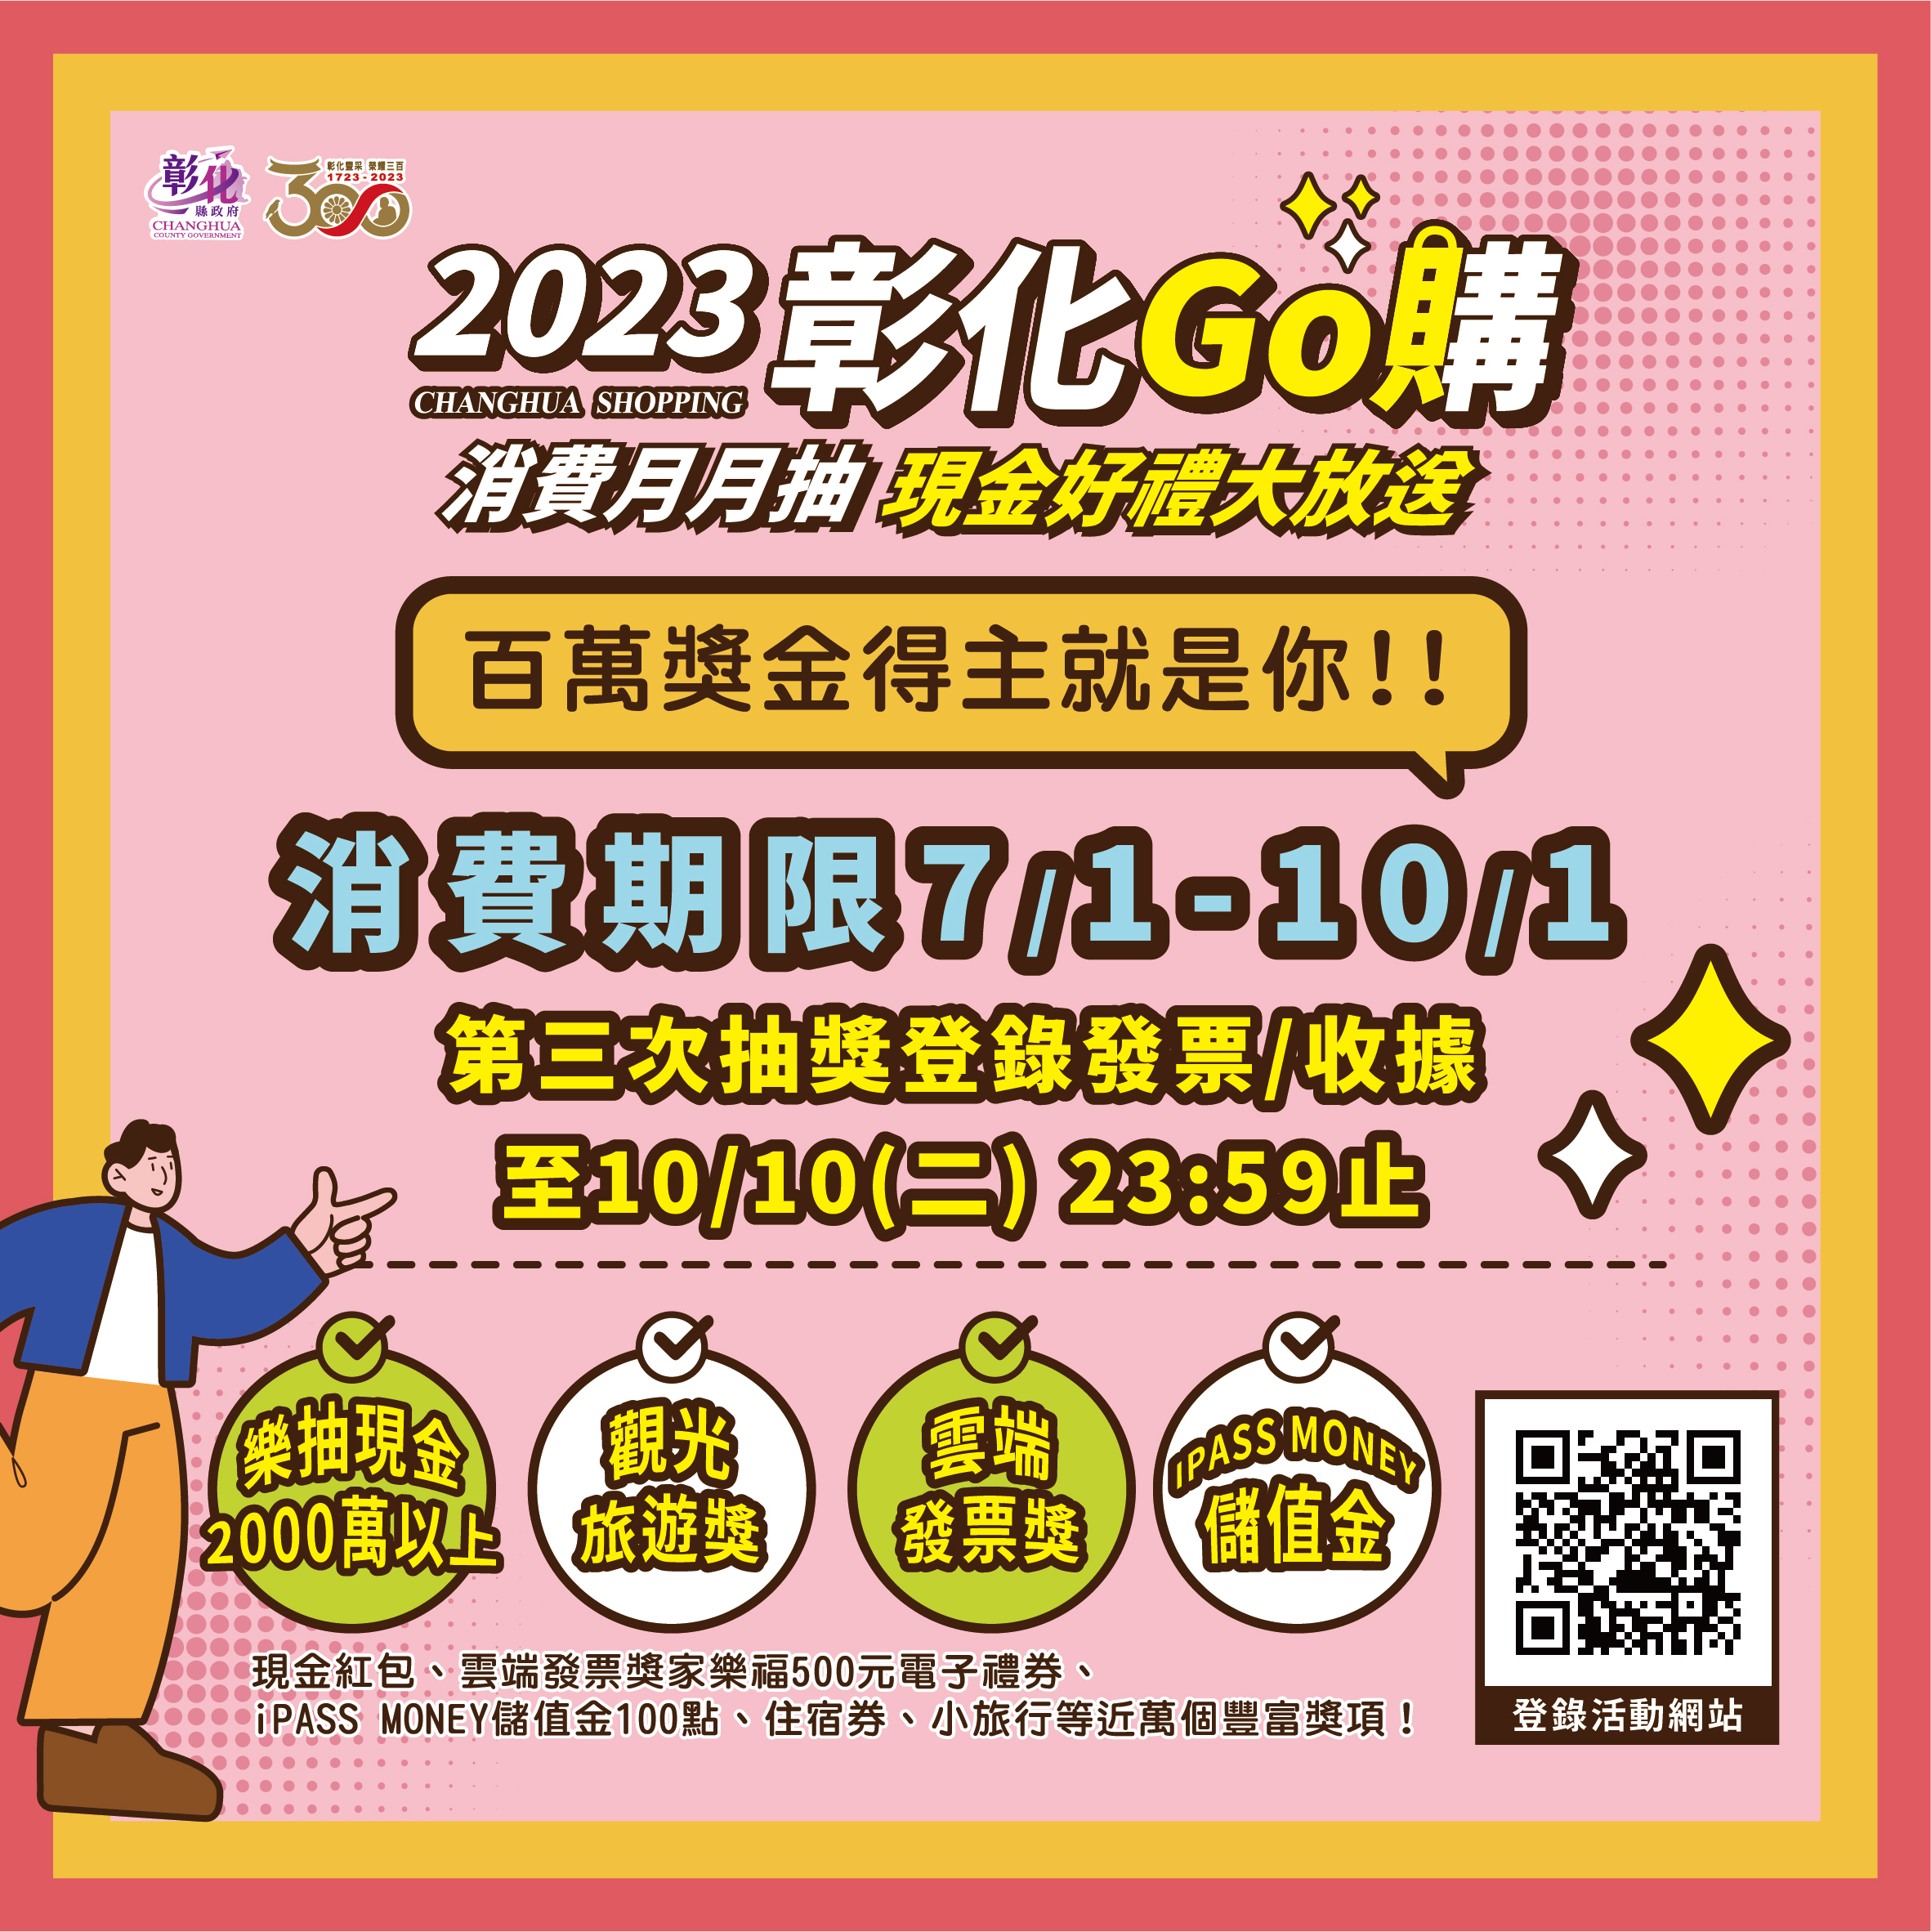 「2023彰化GO購」消費抽獎活動，登錄到10月10日~百萬現金得主就是你！